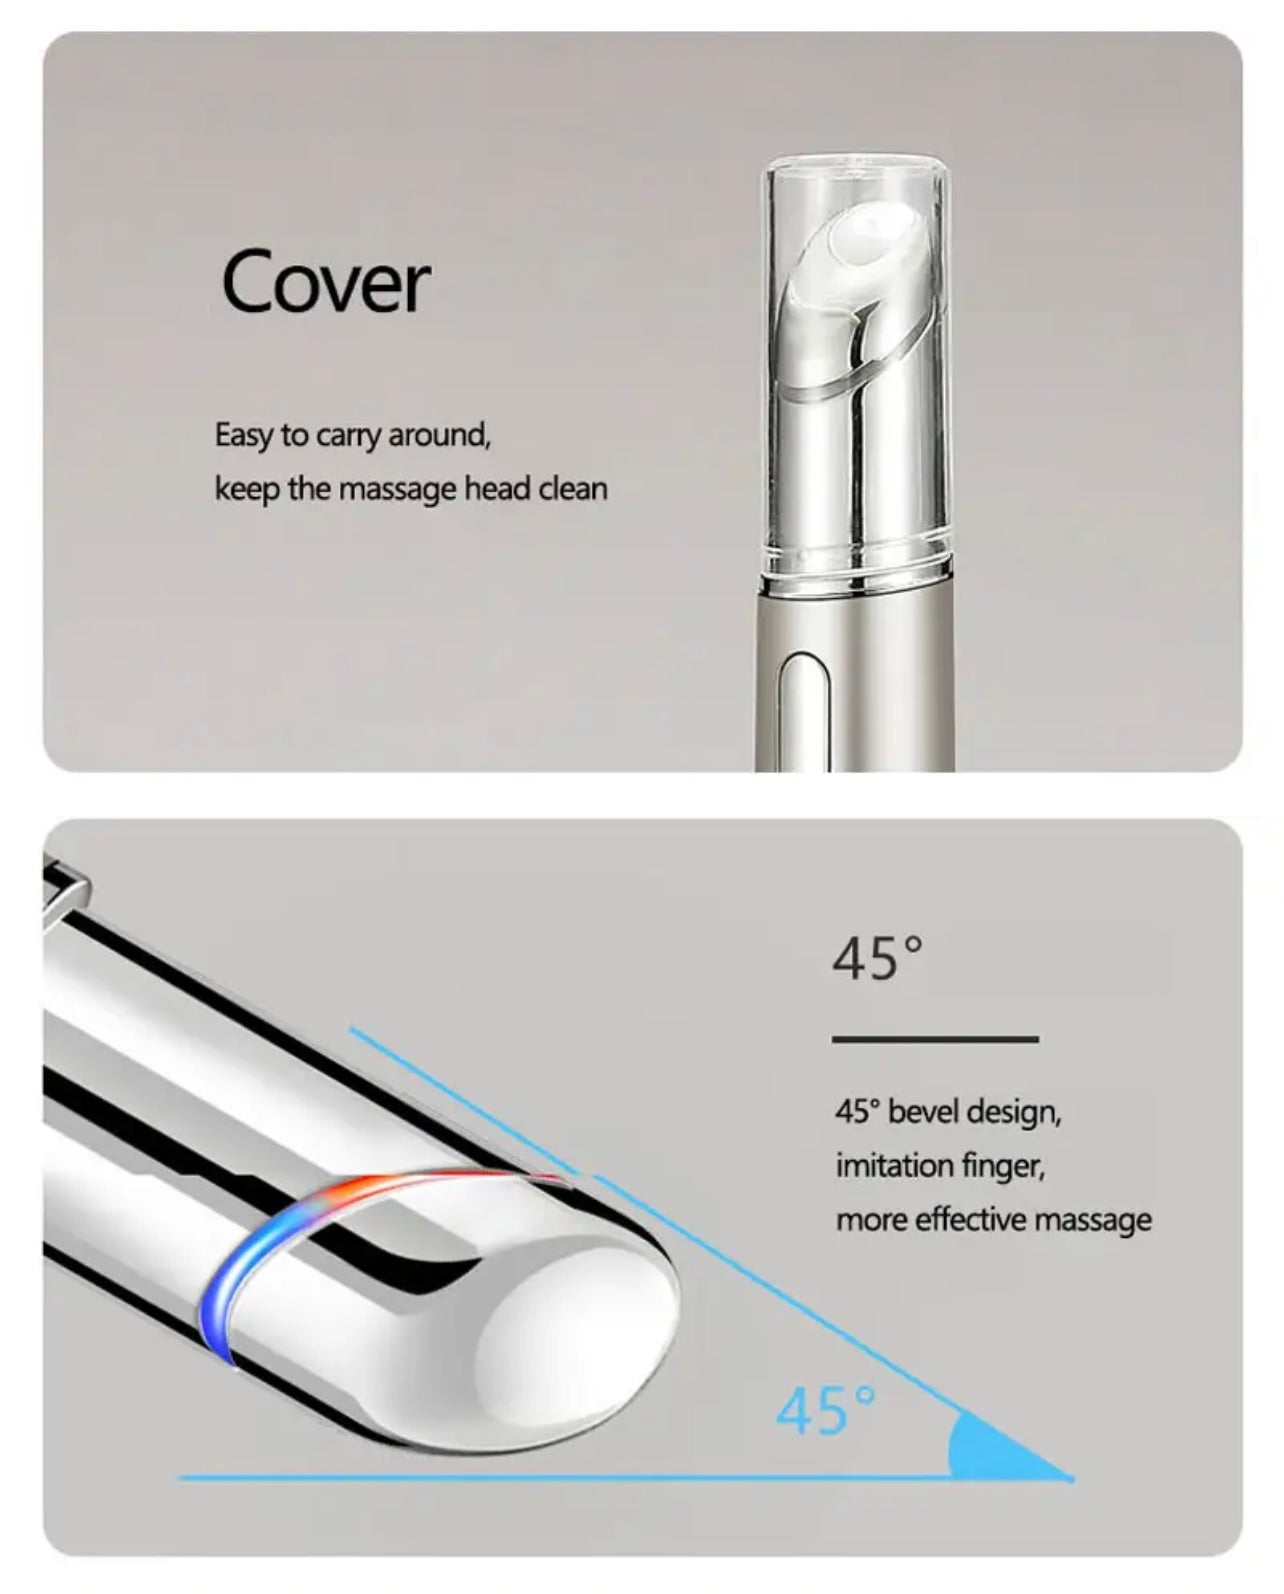 Slim design LED anti-againg eye massager